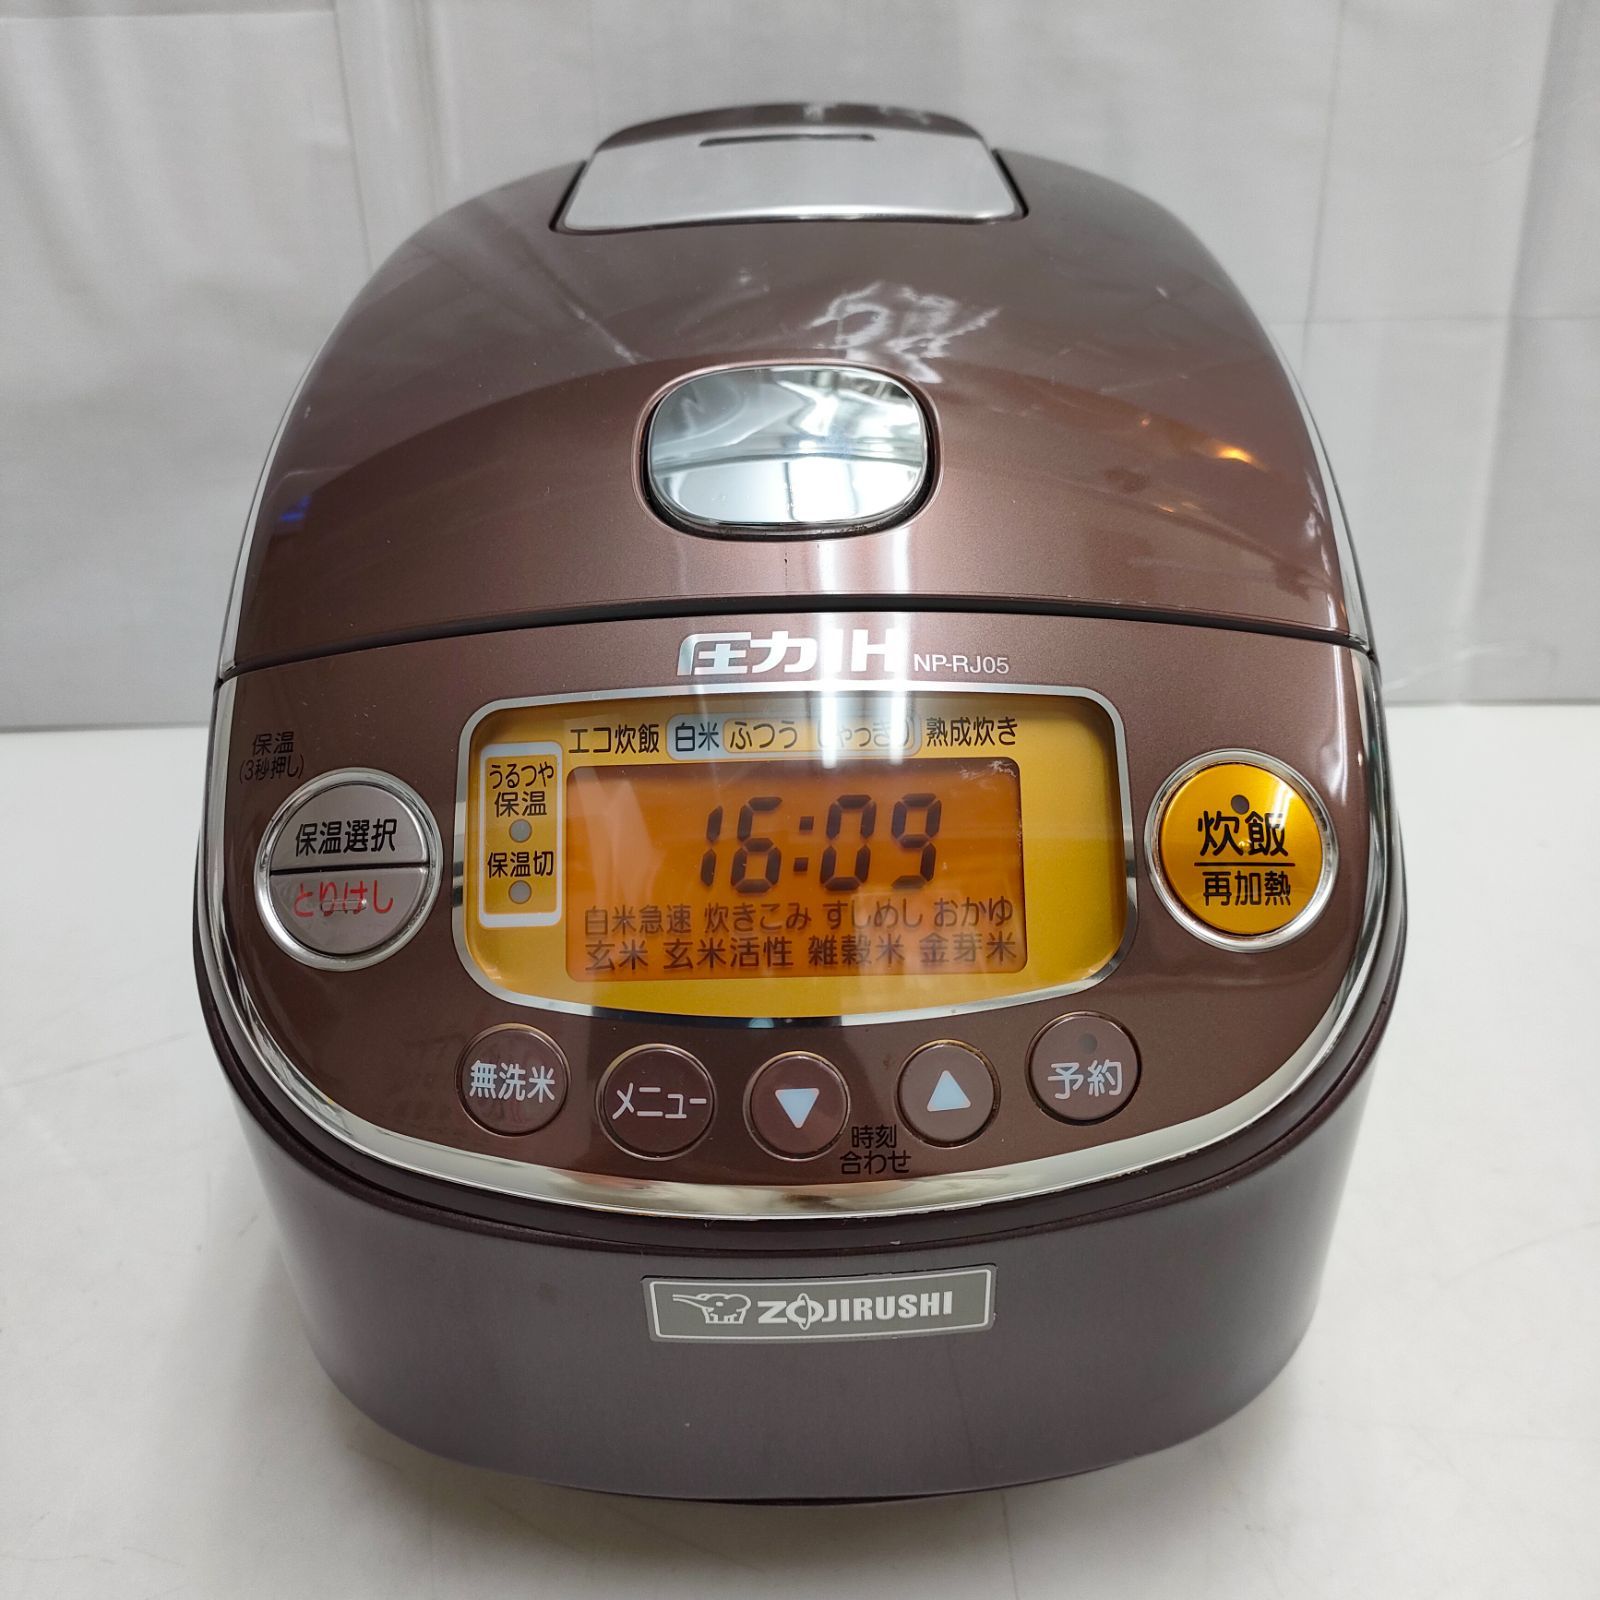 象印 ZOJIRUSHI 炊飯器 圧力IH炊飯ジャー NP-RJ05 - 炊飯器・餅つき機